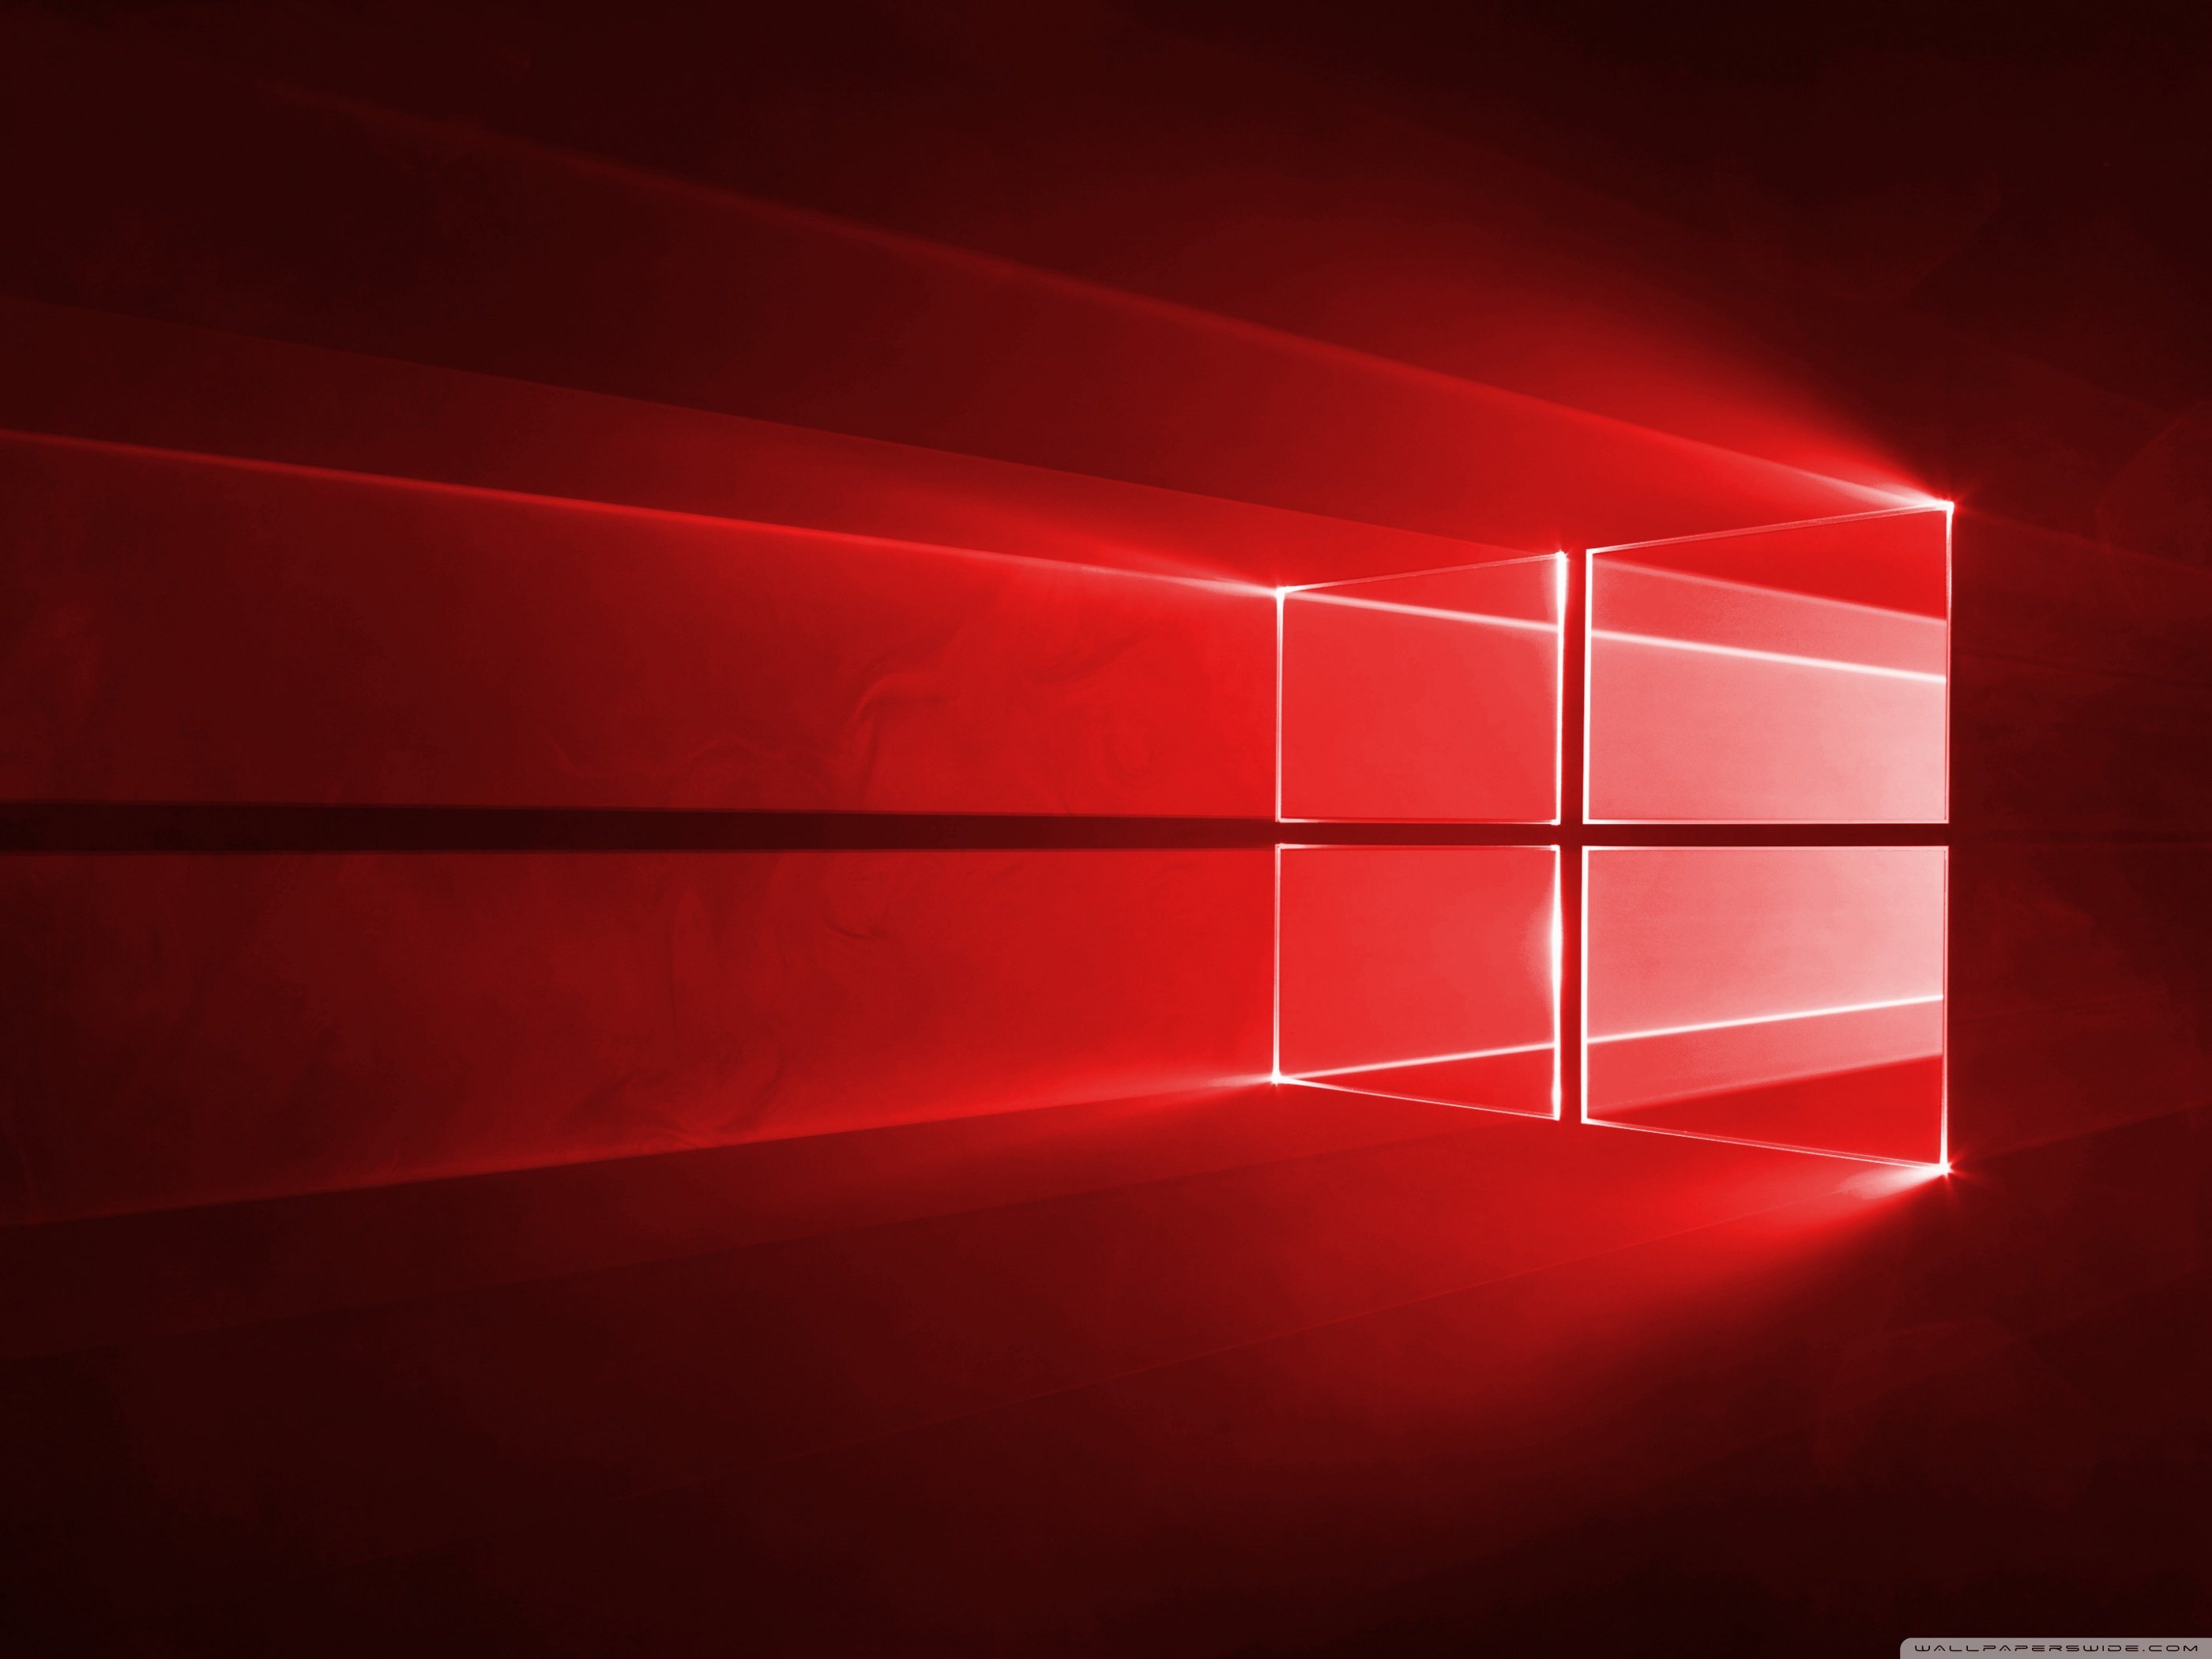 Windows 10 Red in 4K Ultra HD Desktop Background Wallpaper for: Widescreen & UltraWide Desktop & Laptop, Multi Display, Dual & Triple Monitor, Tablet